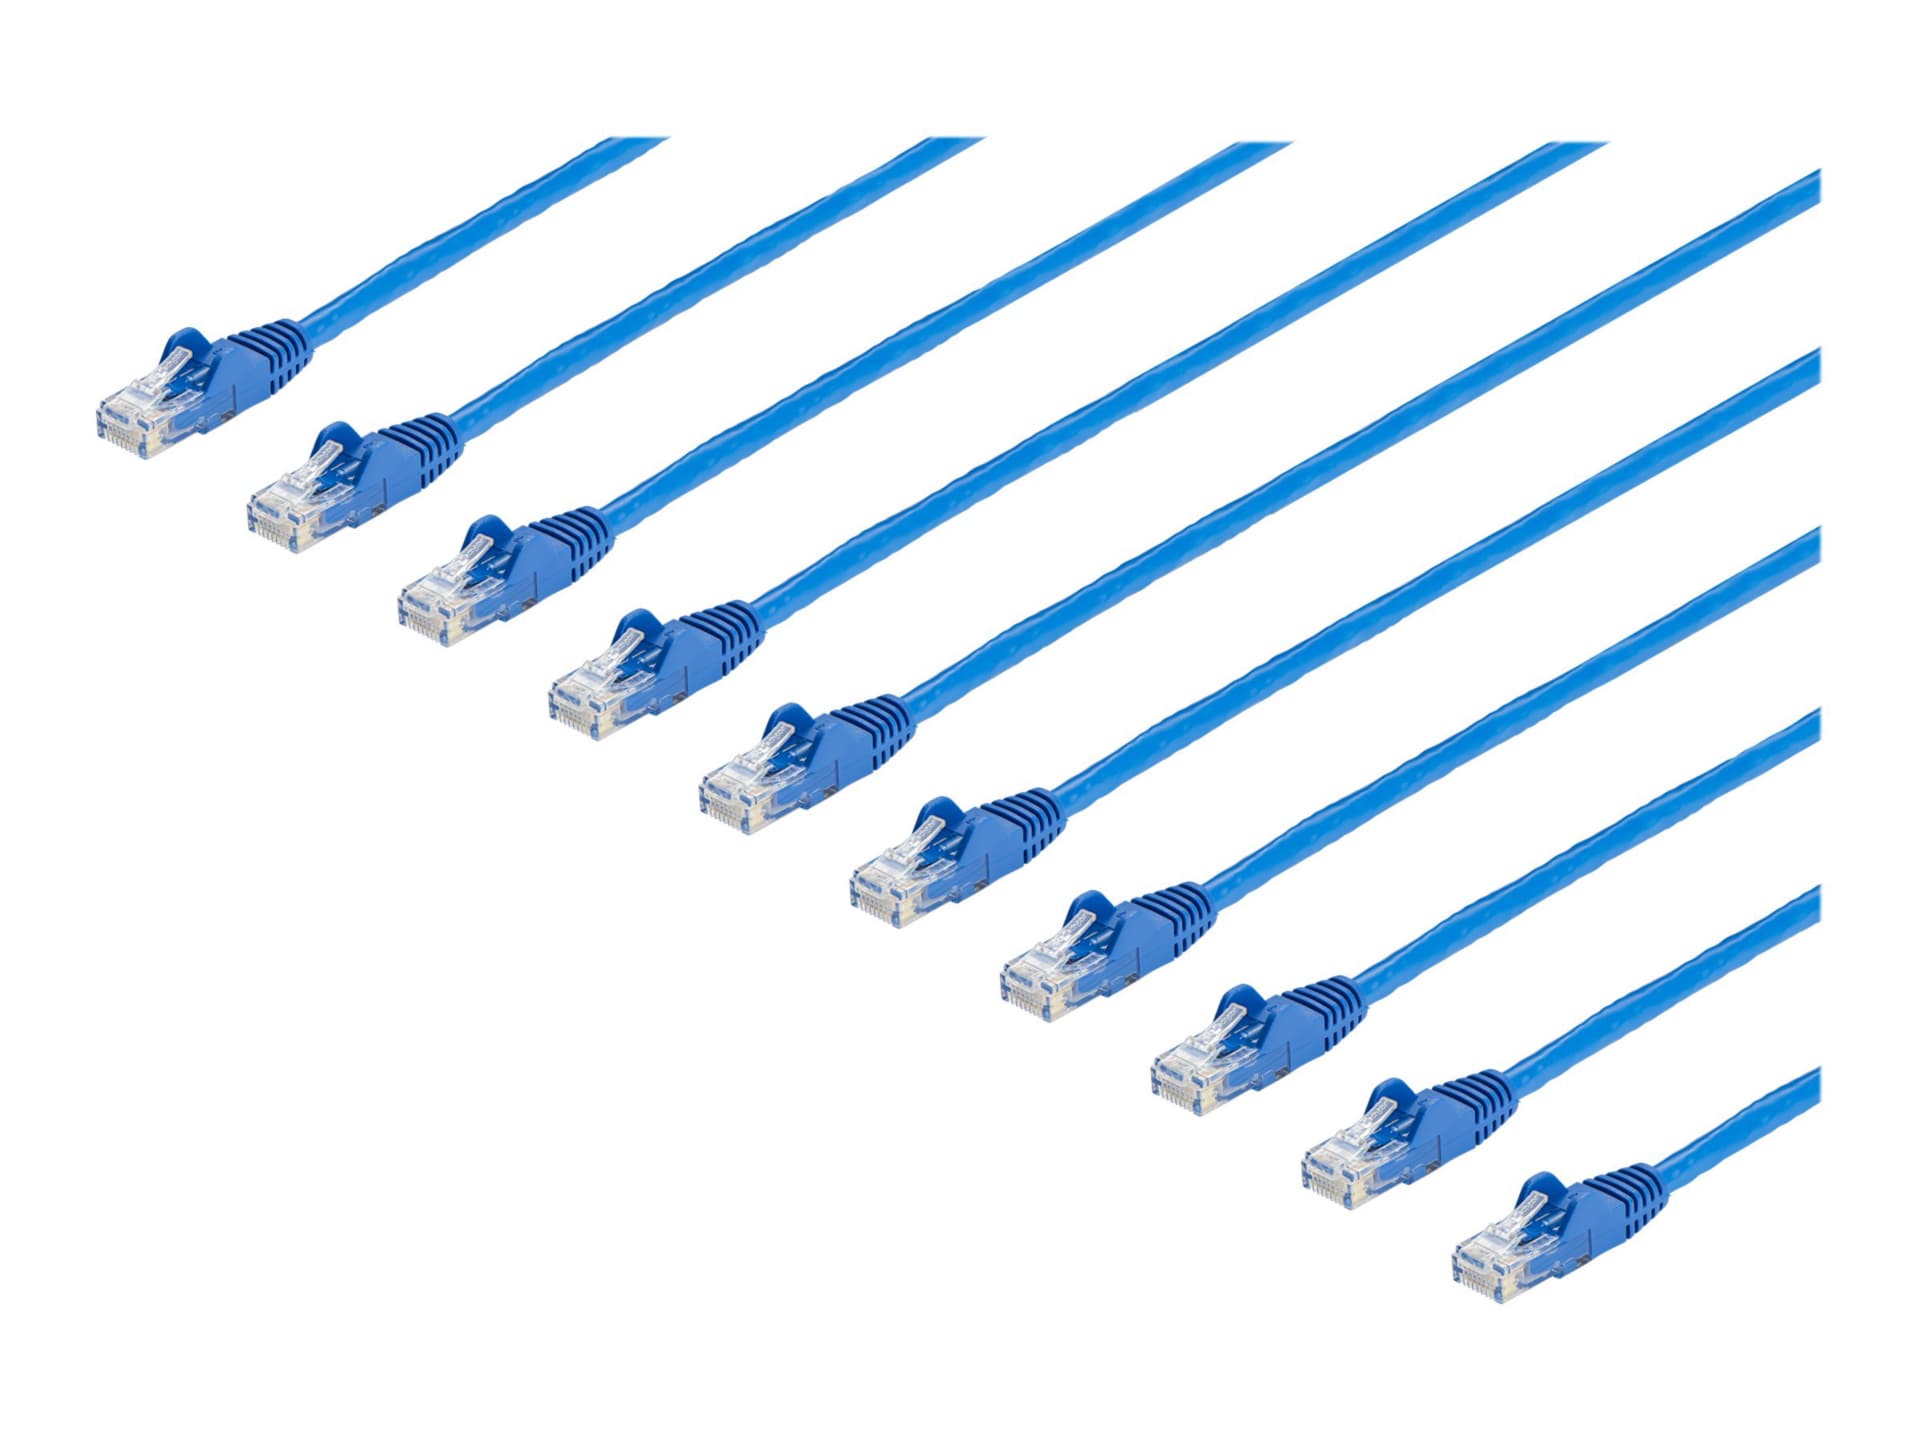 StarTech.com 25 ft. CAT6 Ethernet Cable - 10 Pack - ETL Verified - Blue CAT6 Patch Cord - Snagless RJ45 Connectors - 24